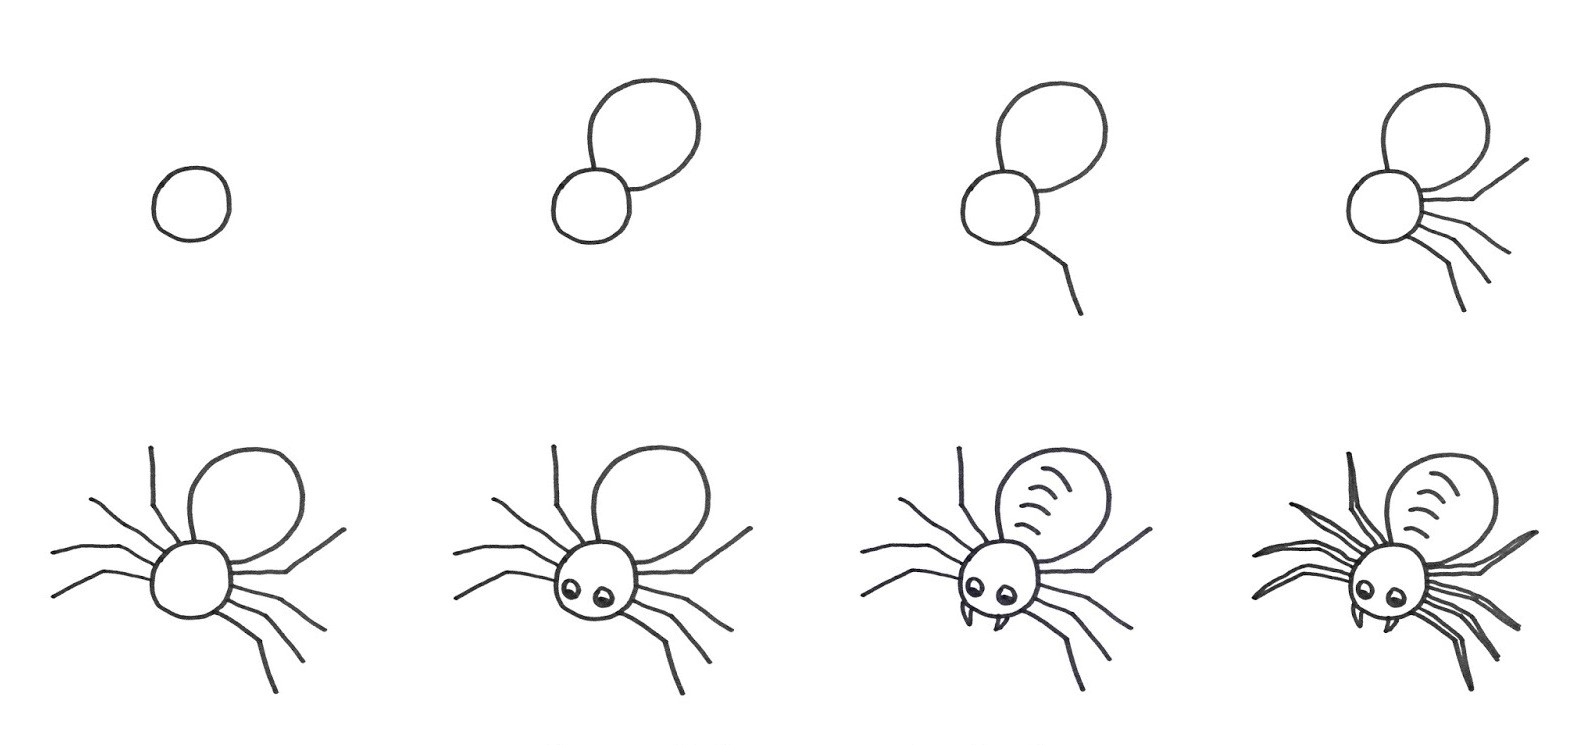 Spider idea 7 zeichnen ideen